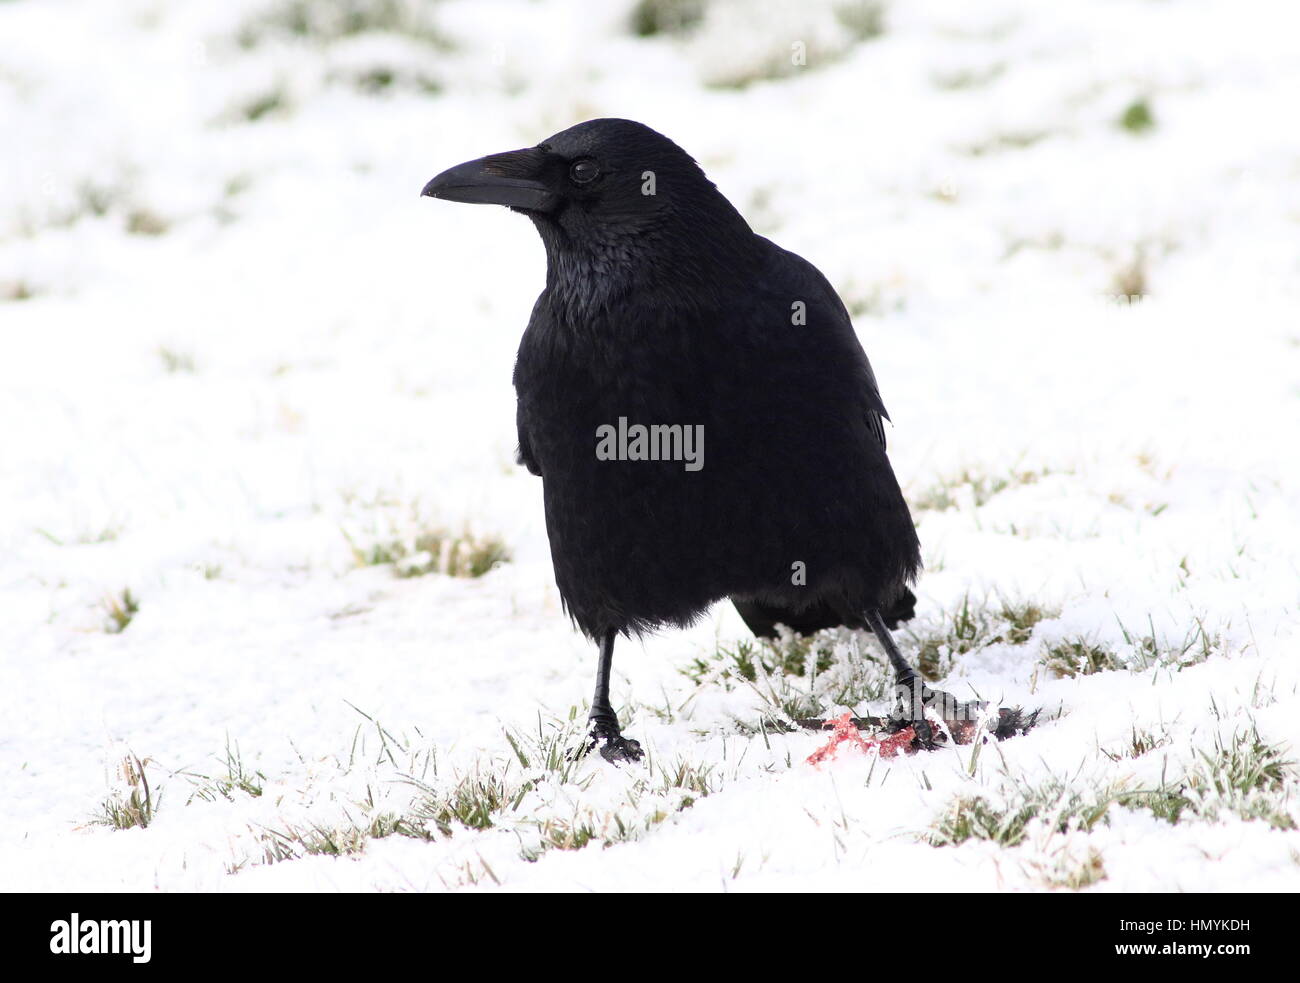 Corneille noire européenne (Corvus corone) dans la neige, se nourrissant d'une souris Banque D'Images